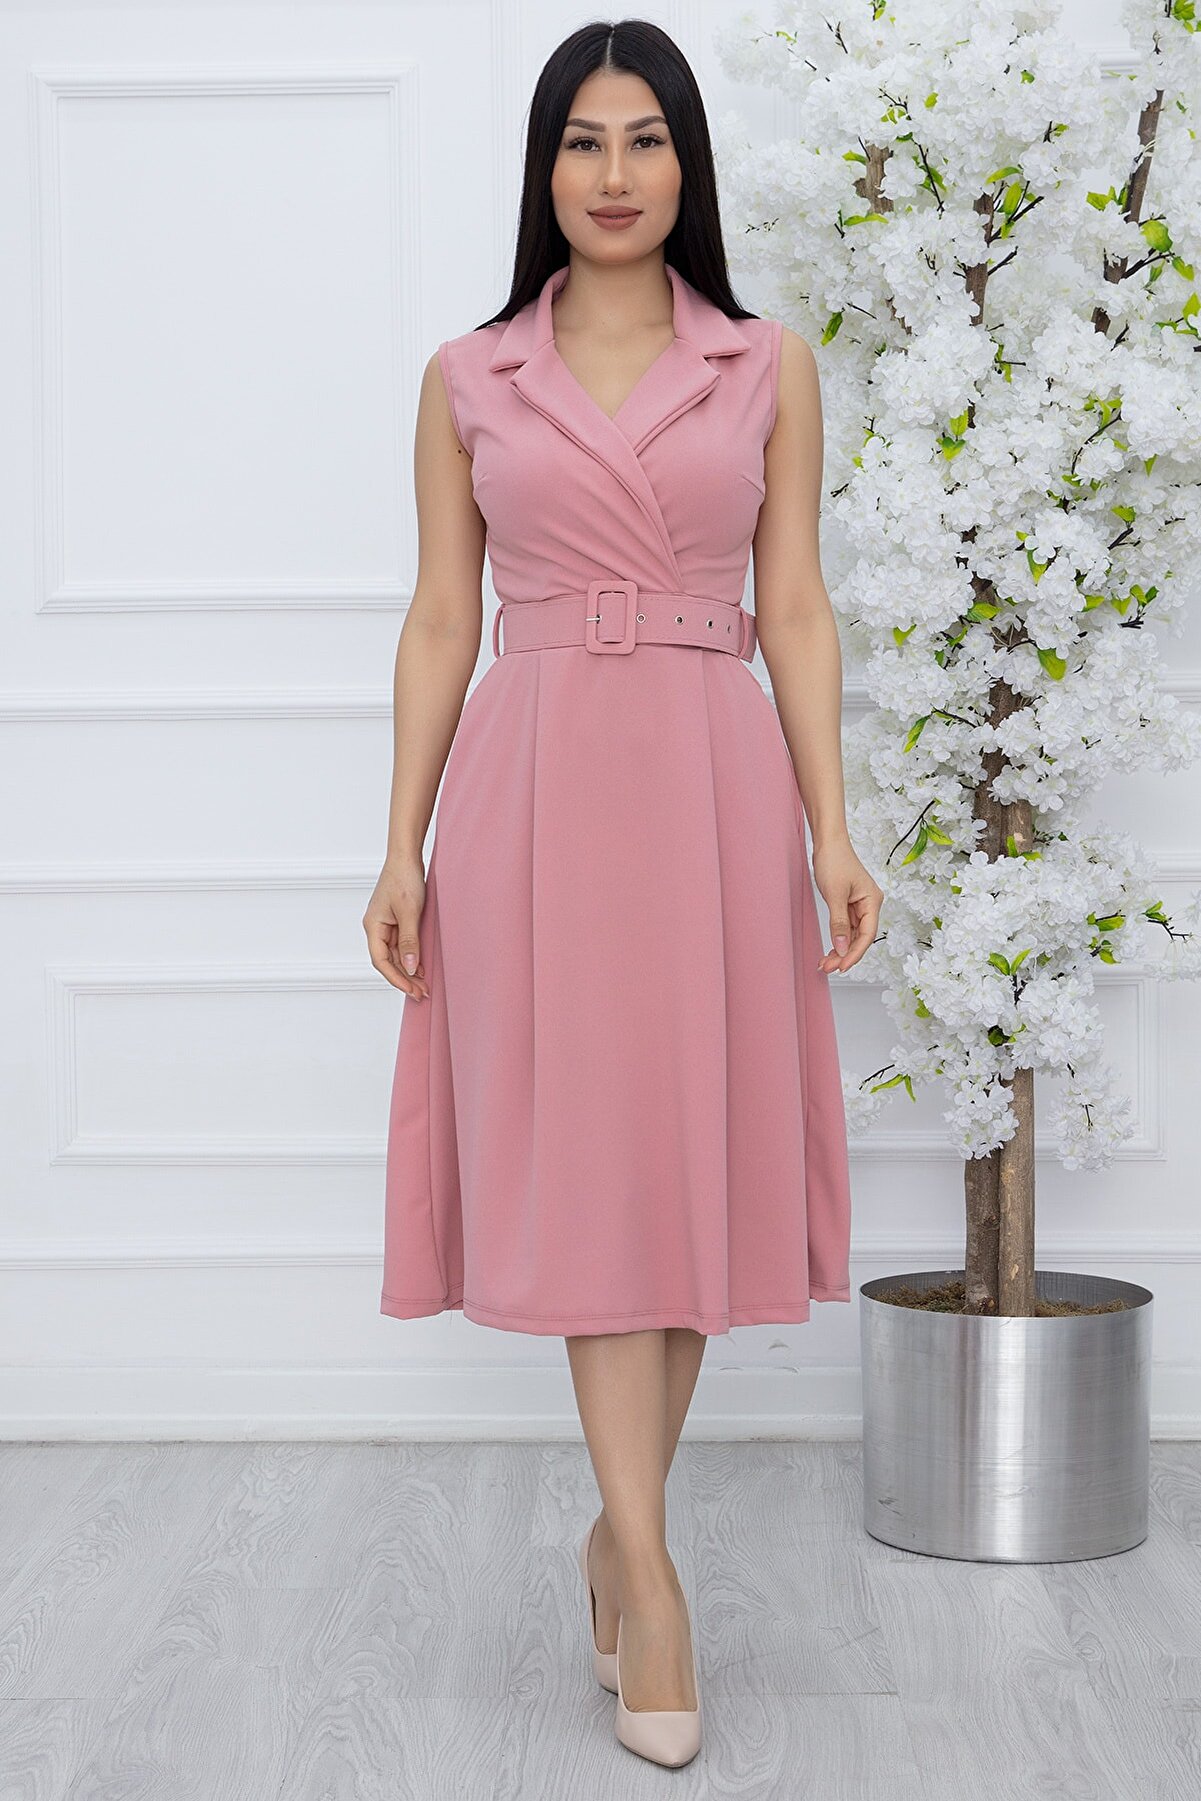 PULLIMM Kadın Klasik Yaka Kolsuz Elbise 2508